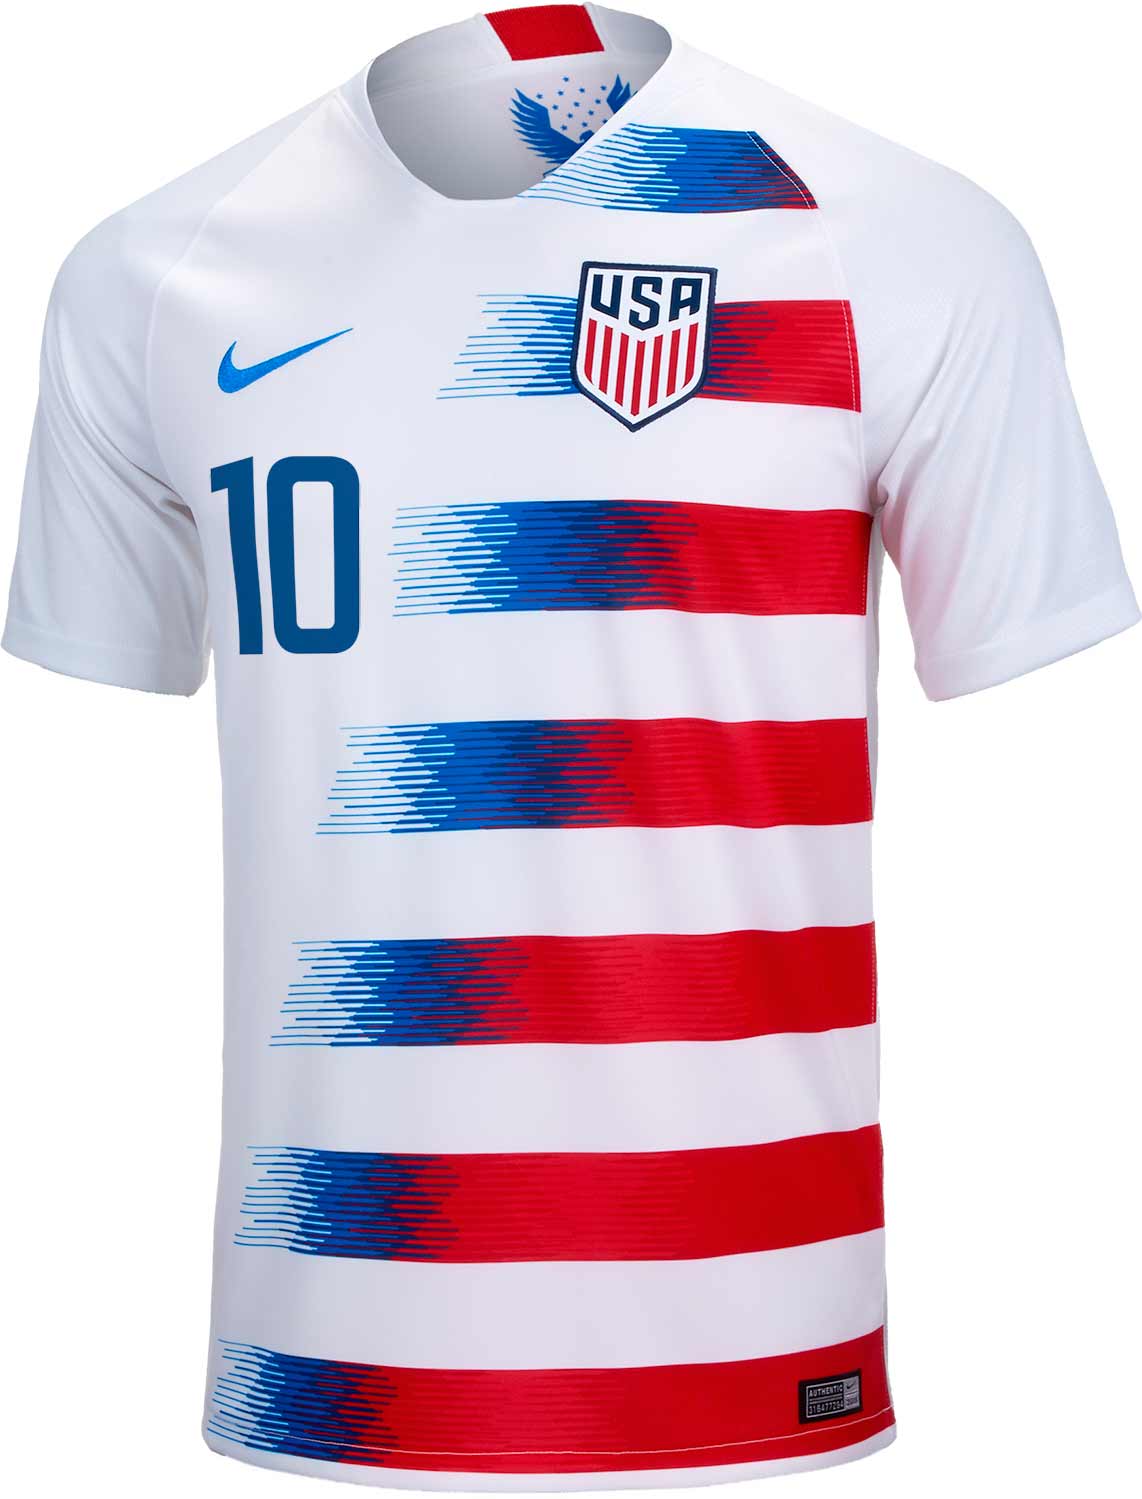 2018/19 Nike Christian Pulisic USA Home Jersey - SoccerPro